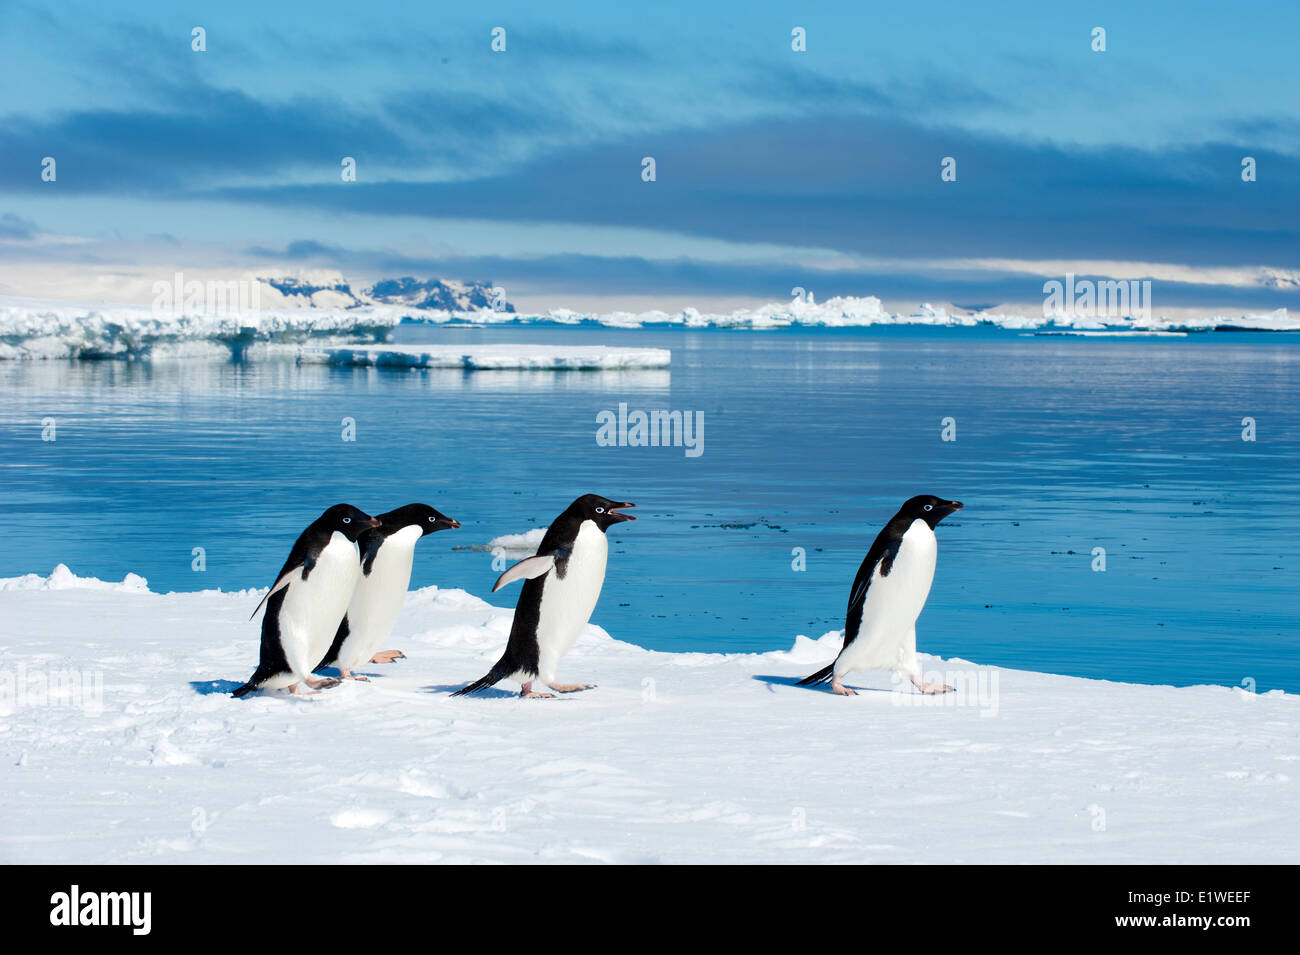 Adelie penguins (Pygoscelis adeliae) loafing by the ice edge, Petrel island, Antarctic Peninsula Stock Photo